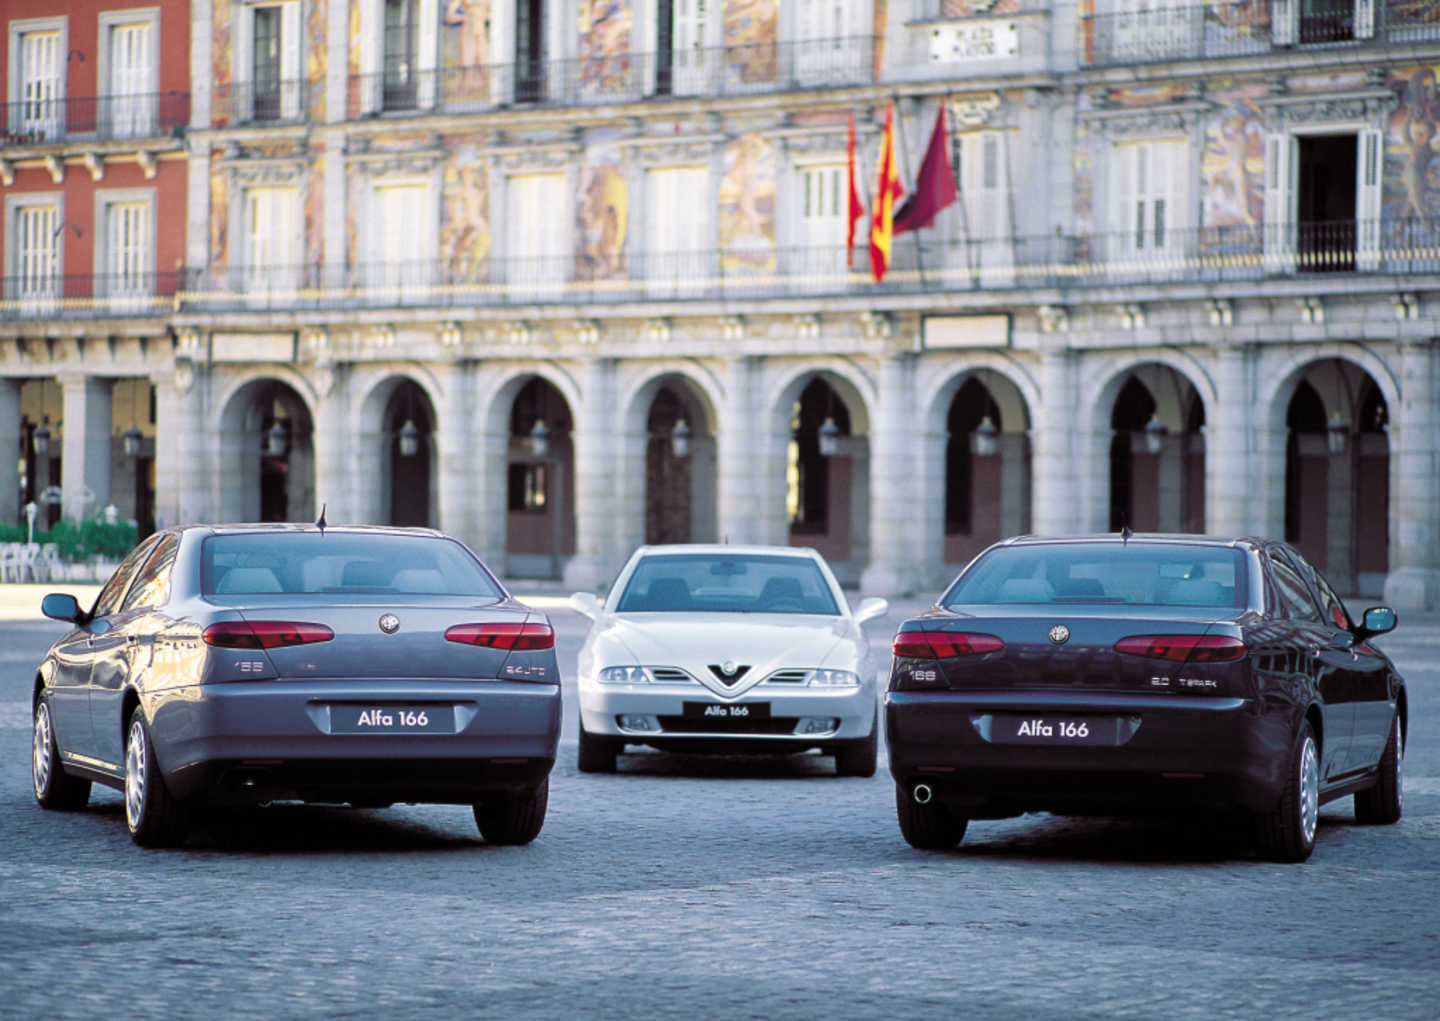 3 Alfa Romeo 166 dans une cours, une blanche, une grise et une noire